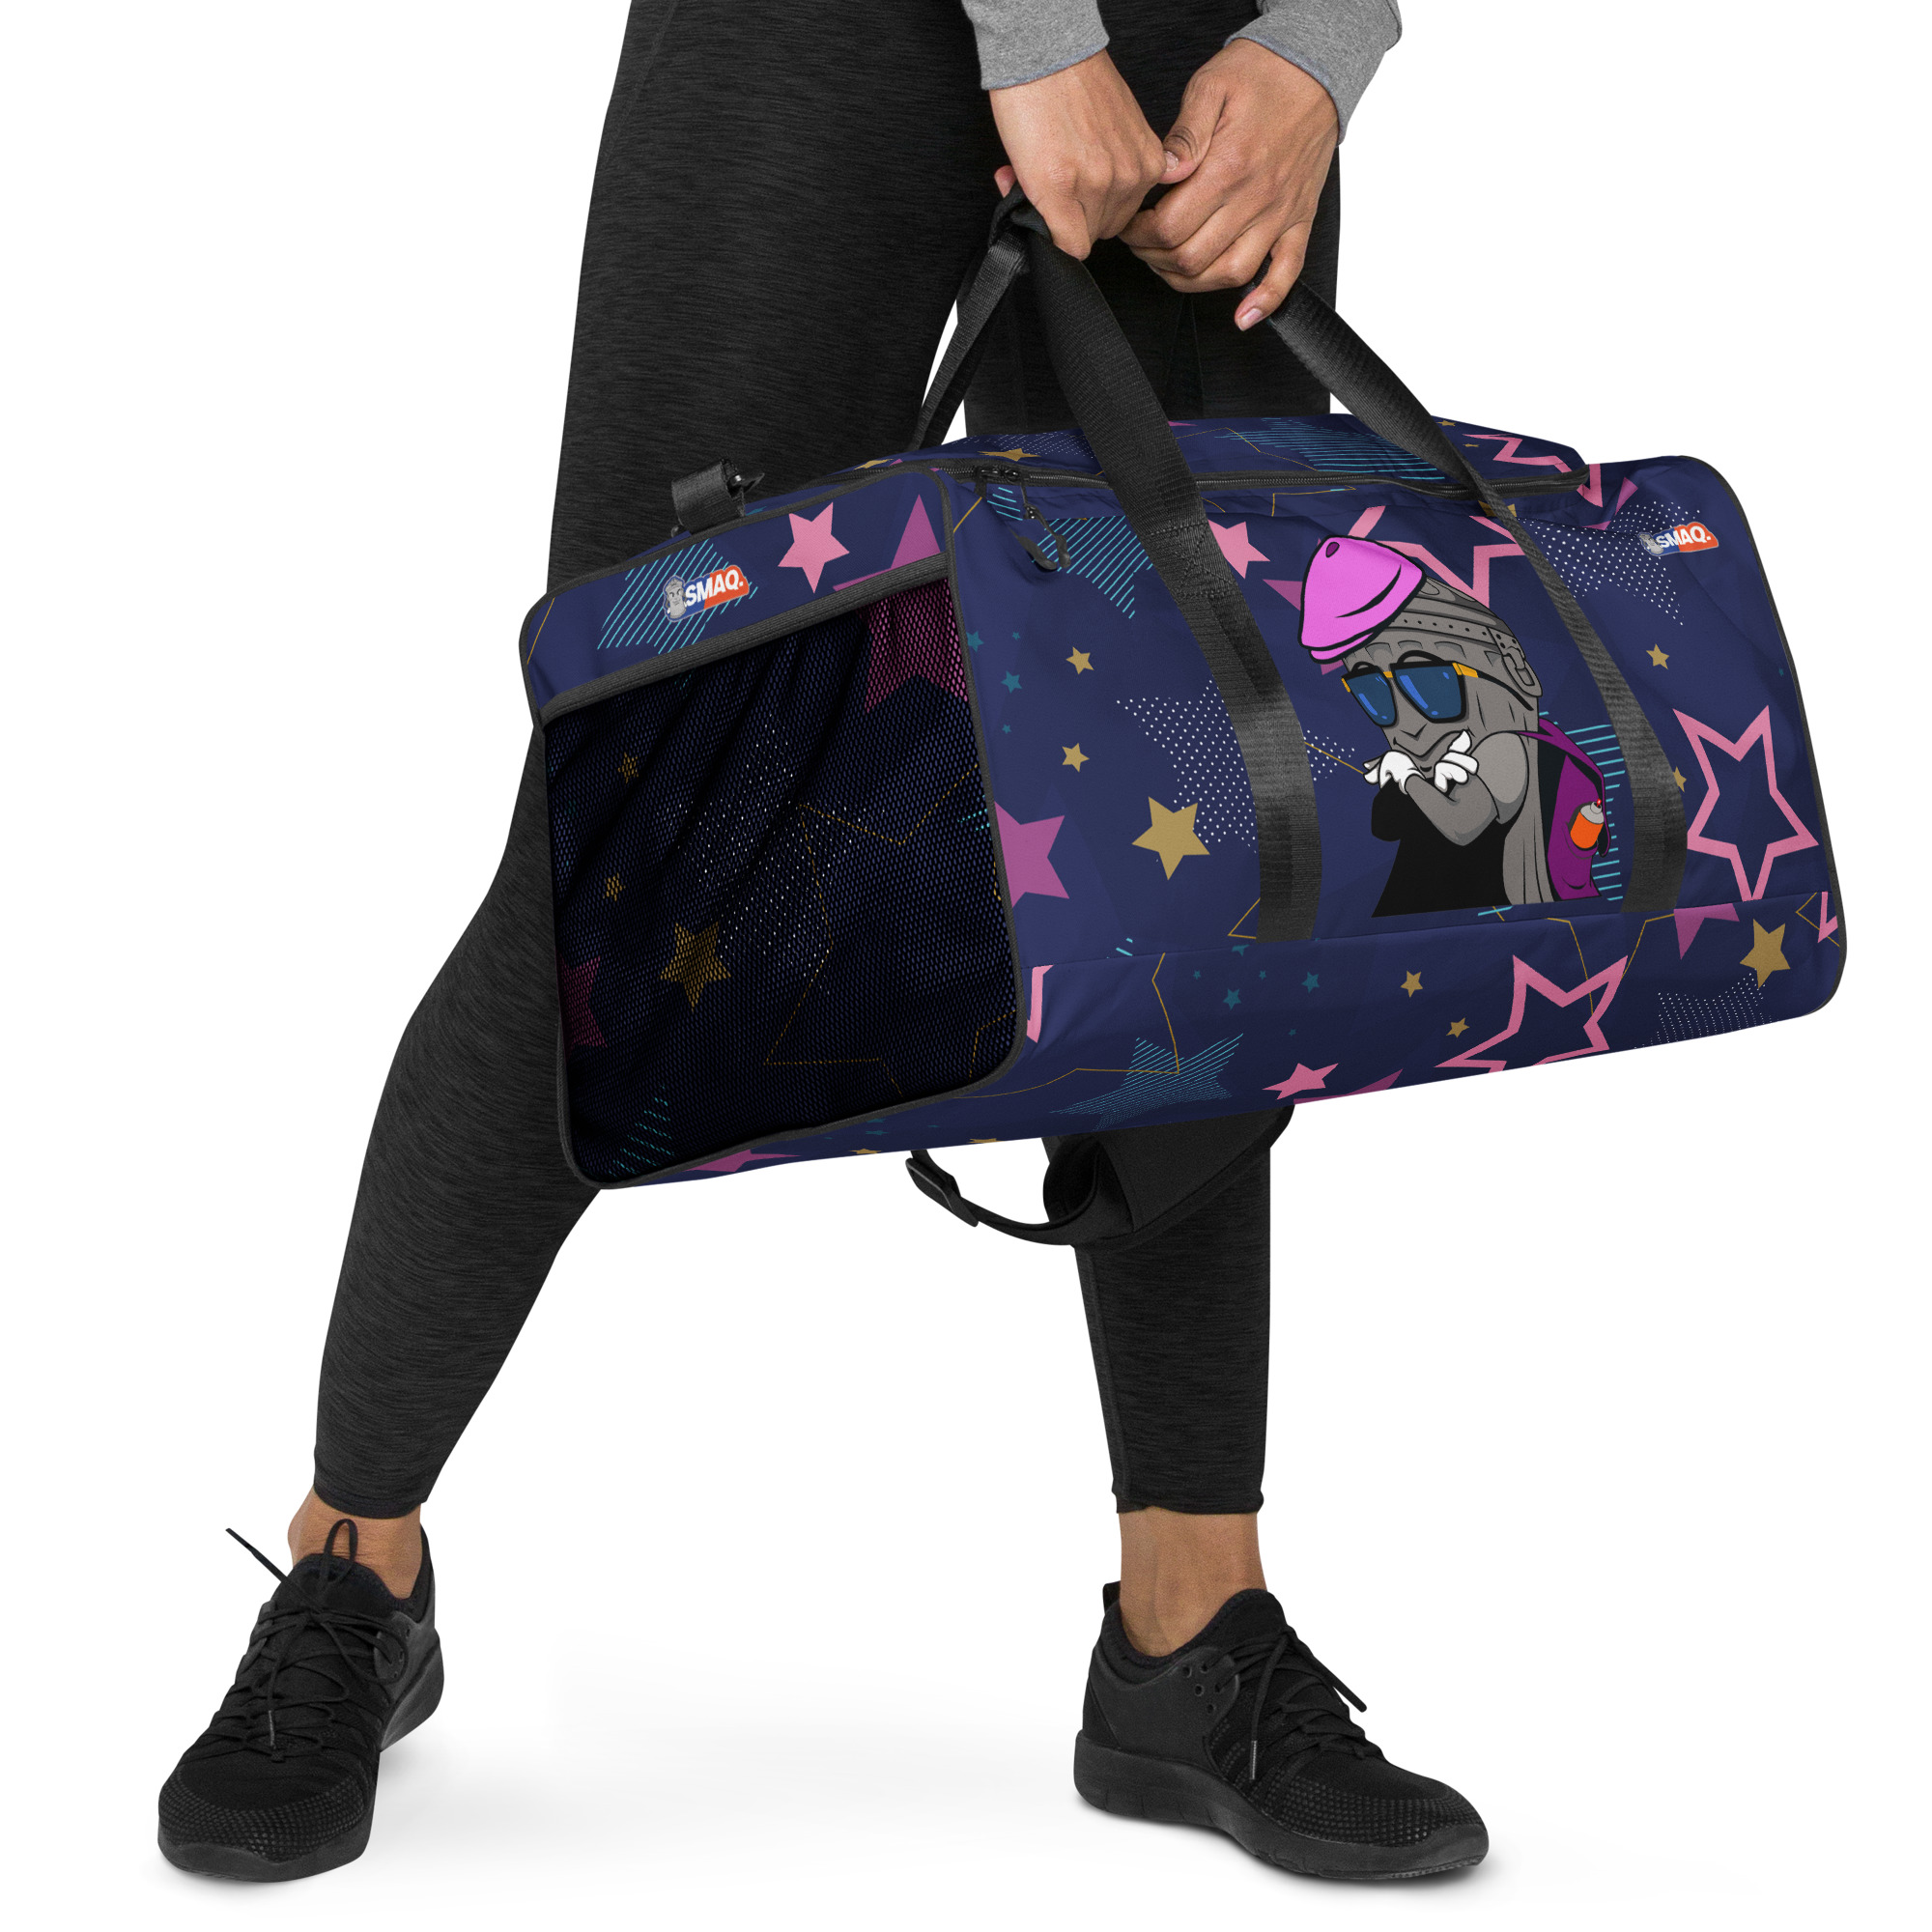 SMAQ-STAR Duffle bag